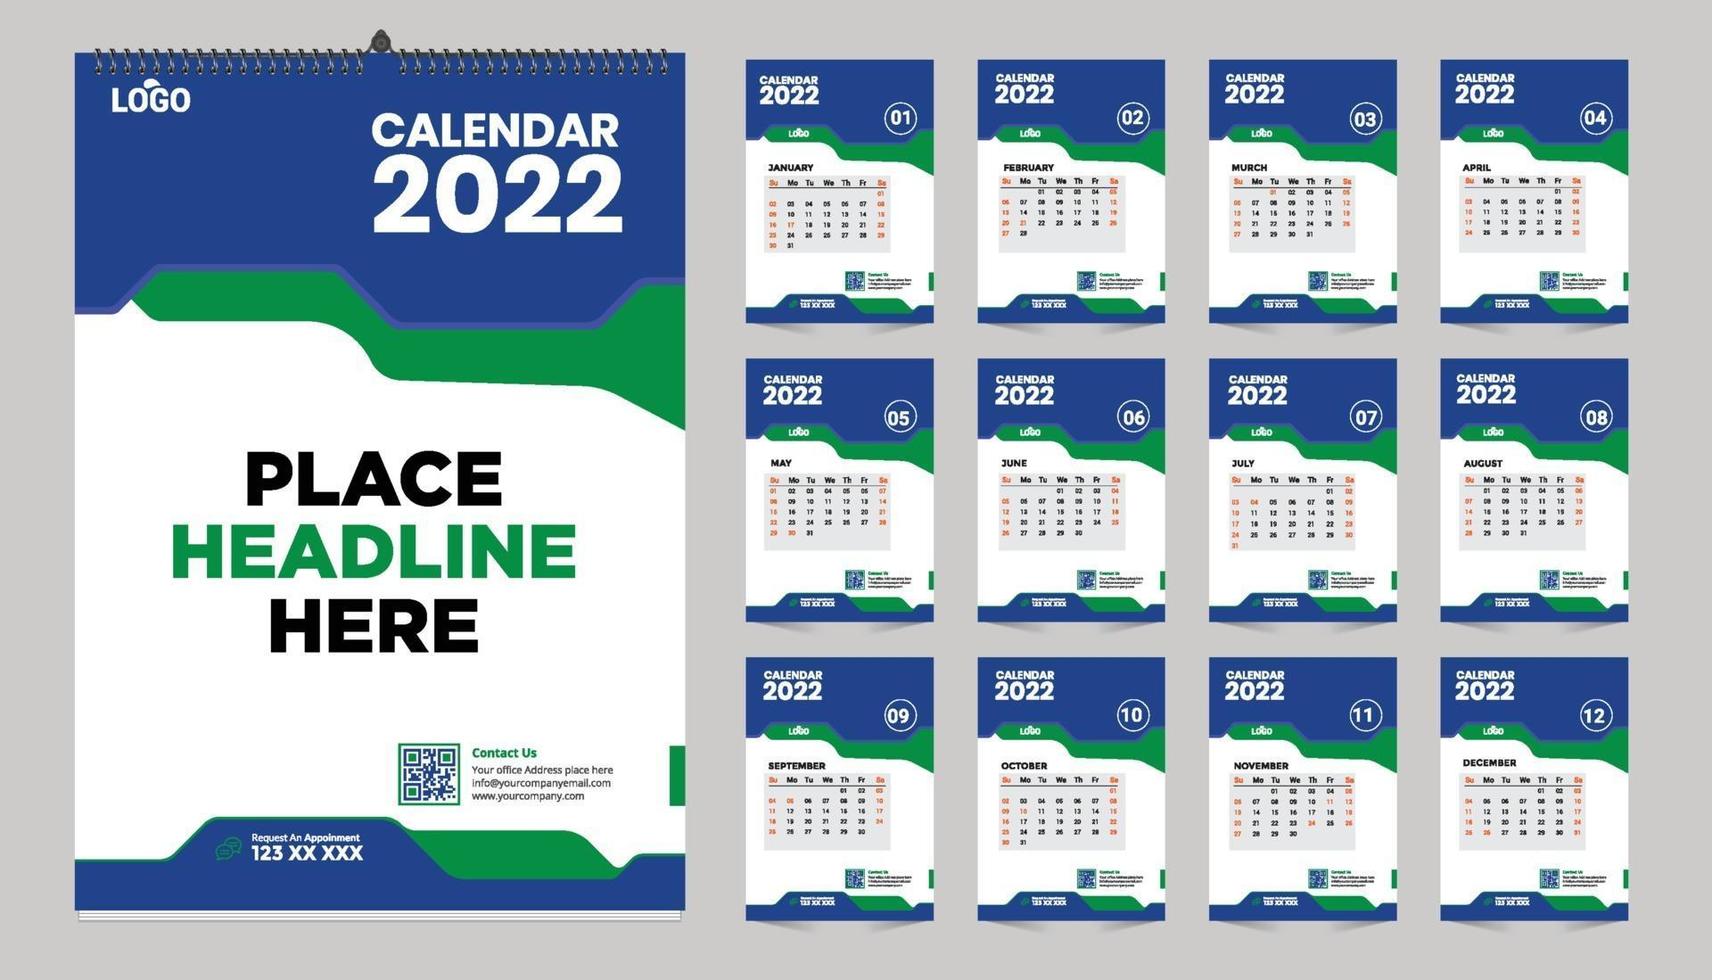 modelo de design de calendário de parede mensal gratuito para 2022, 2023, 2024, 2025, 2026, 2026 anos. semana começa no domingo. diário do planejador com lugar para foto. vetor